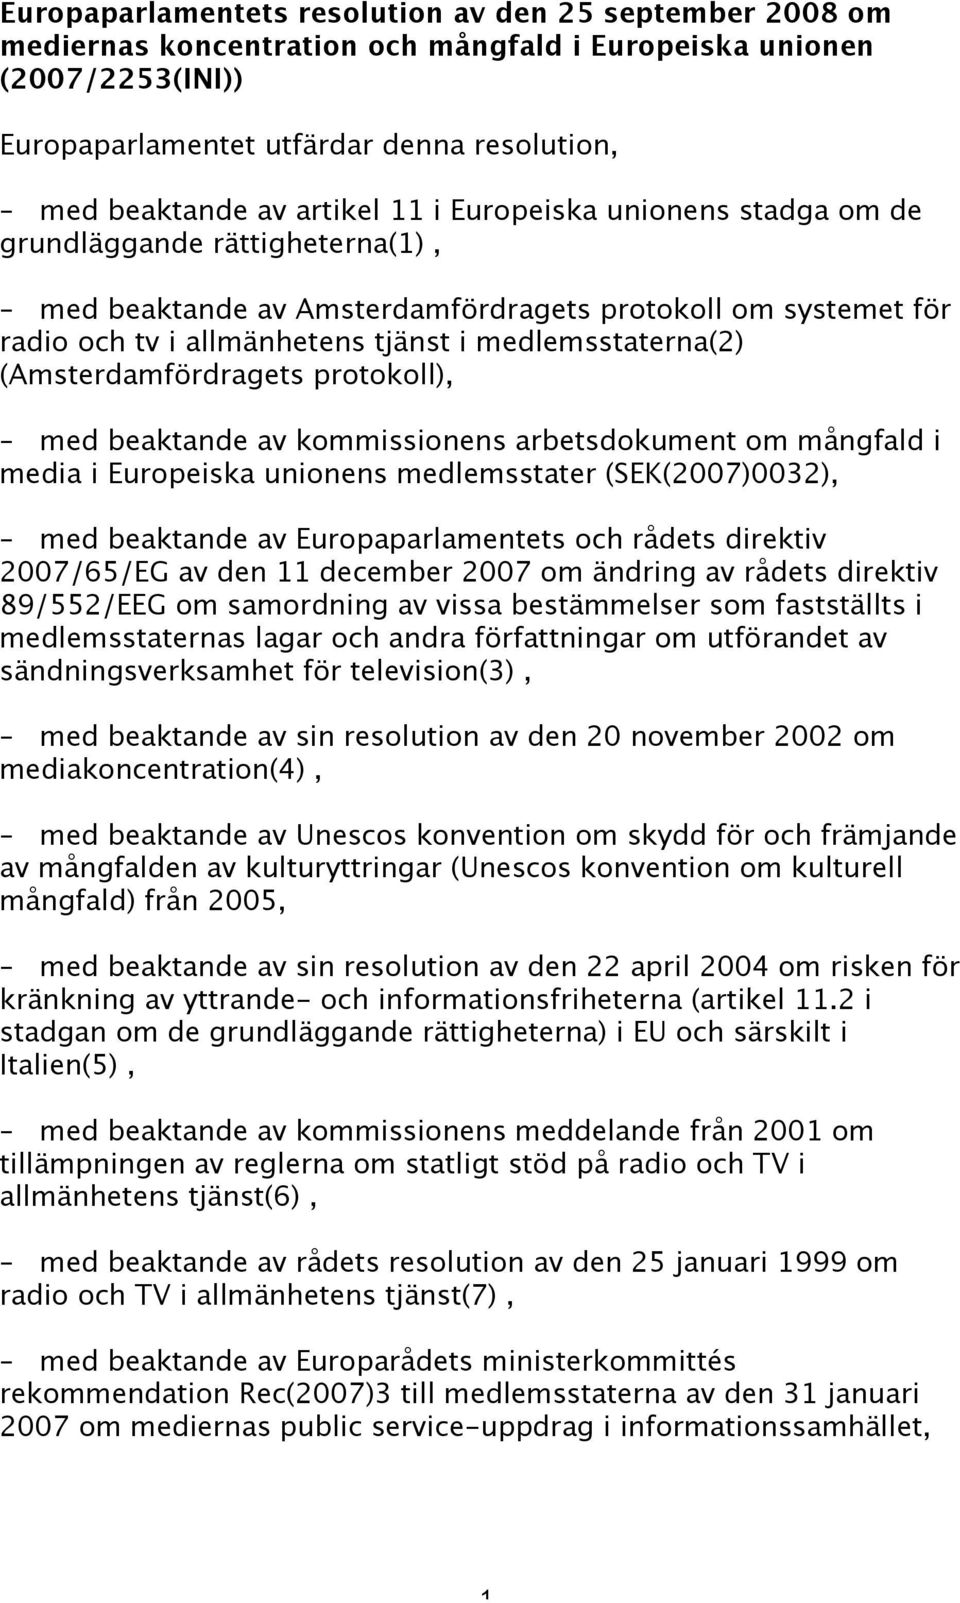 (Amsterdamfördragets protokoll), med beaktande av kommissionens arbetsdokument om mångfald i media i Europeiska unionens medlemsstater (SEK(2007)0032), med beaktande av Europaparlamentets och rådets